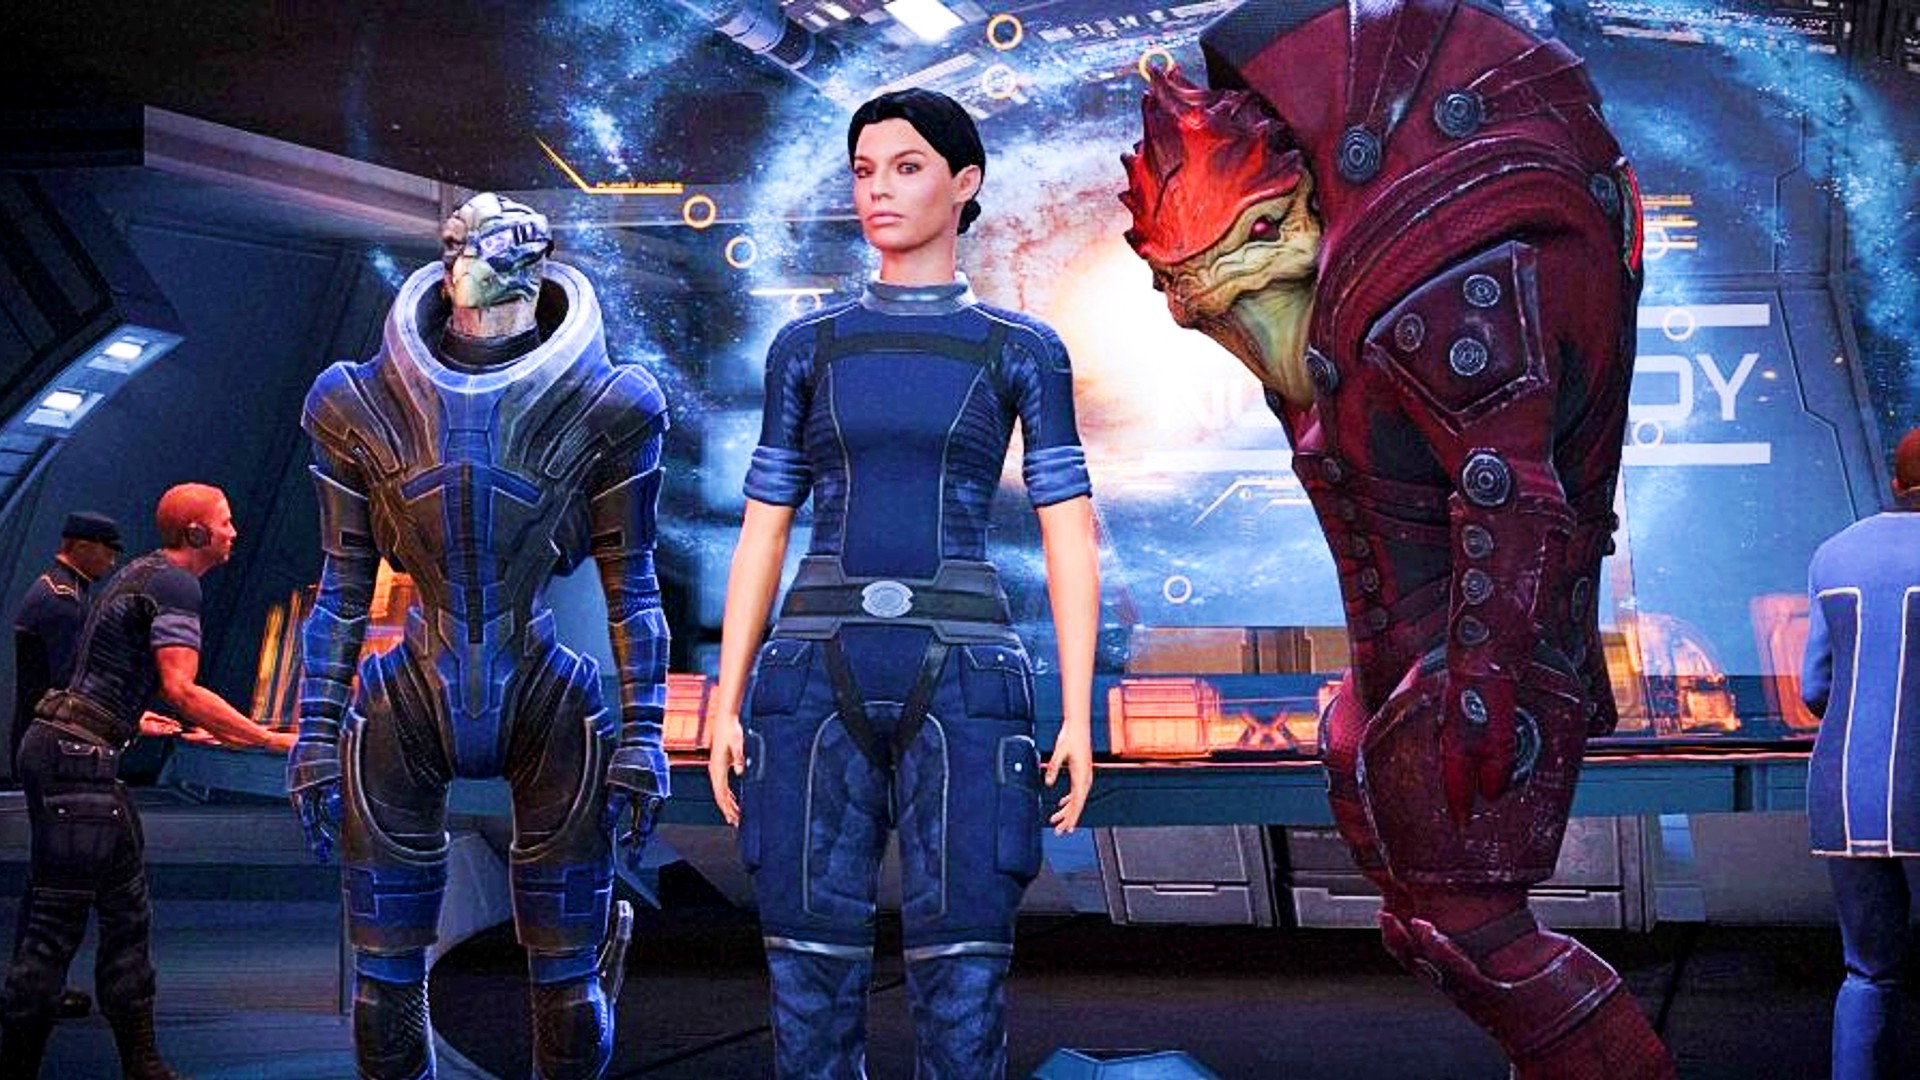 Migliori giochi di gioco di ruolo: Mass Effect Legendary Edition. L'immagine mostra un essere umano femminile tra due creature aliena